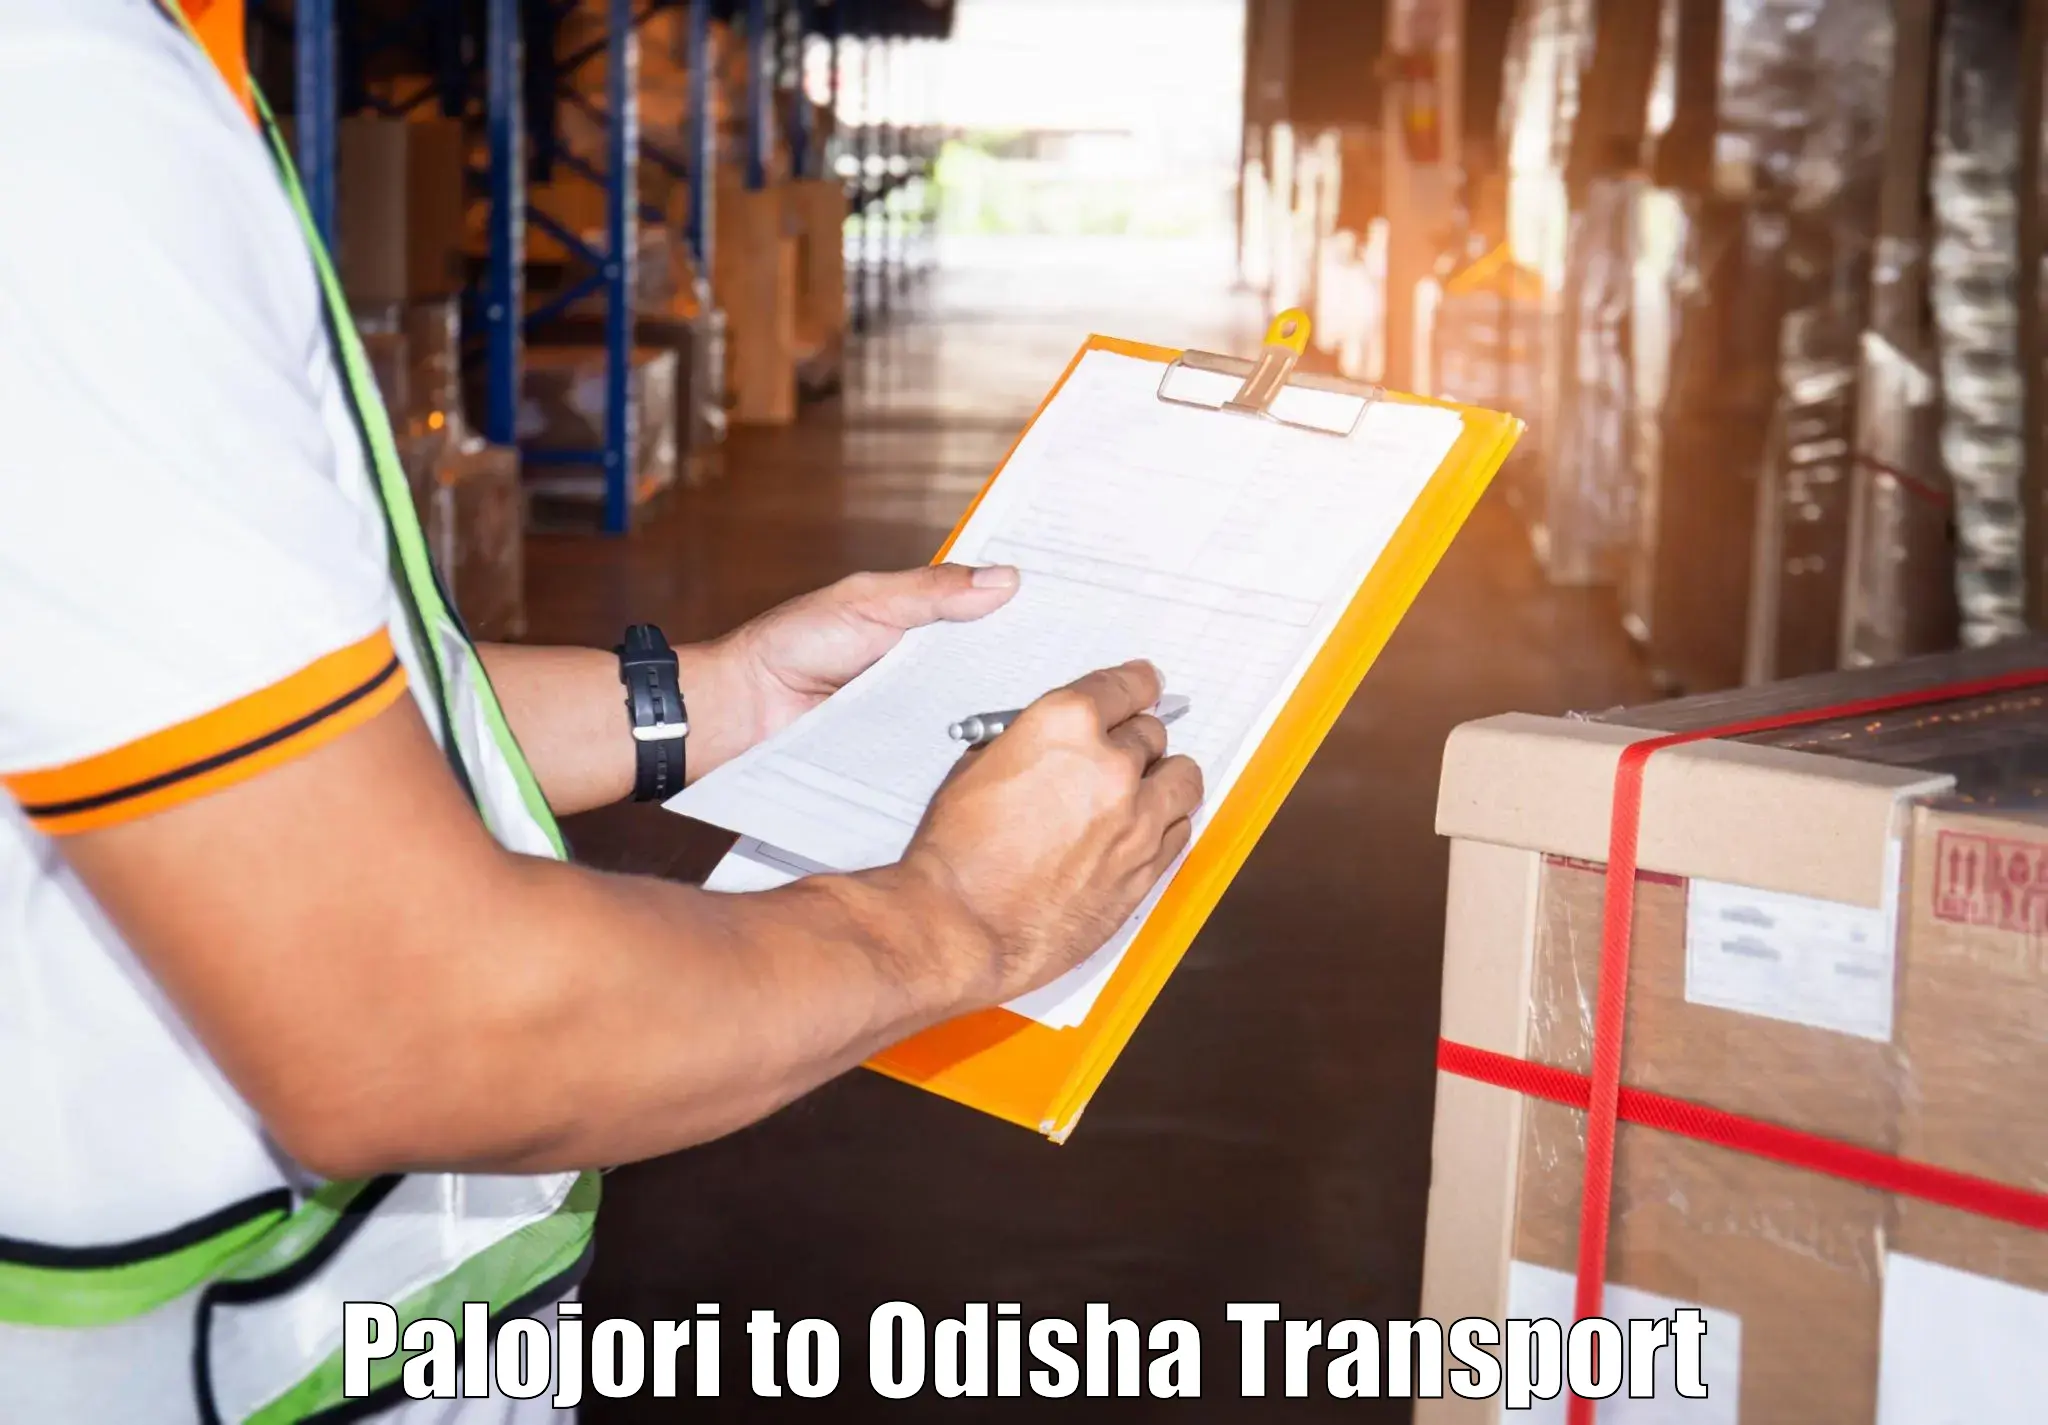 Delivery service Palojori to Daspalla